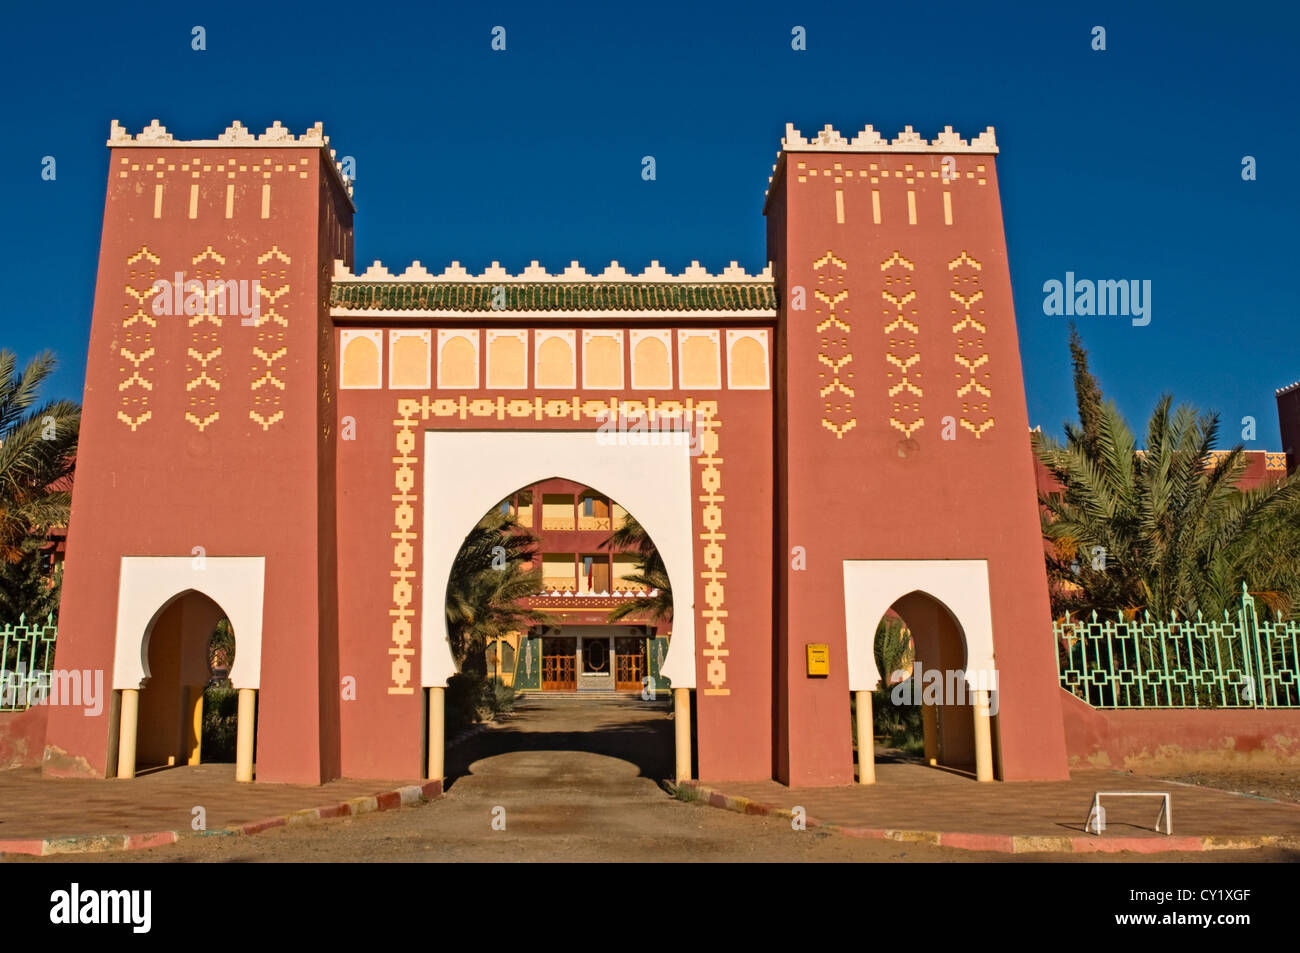 Norte de África Marruecos Erfoud Elati Hotel con arquitectura de estilo típico del desierto Bereber Foto de stock